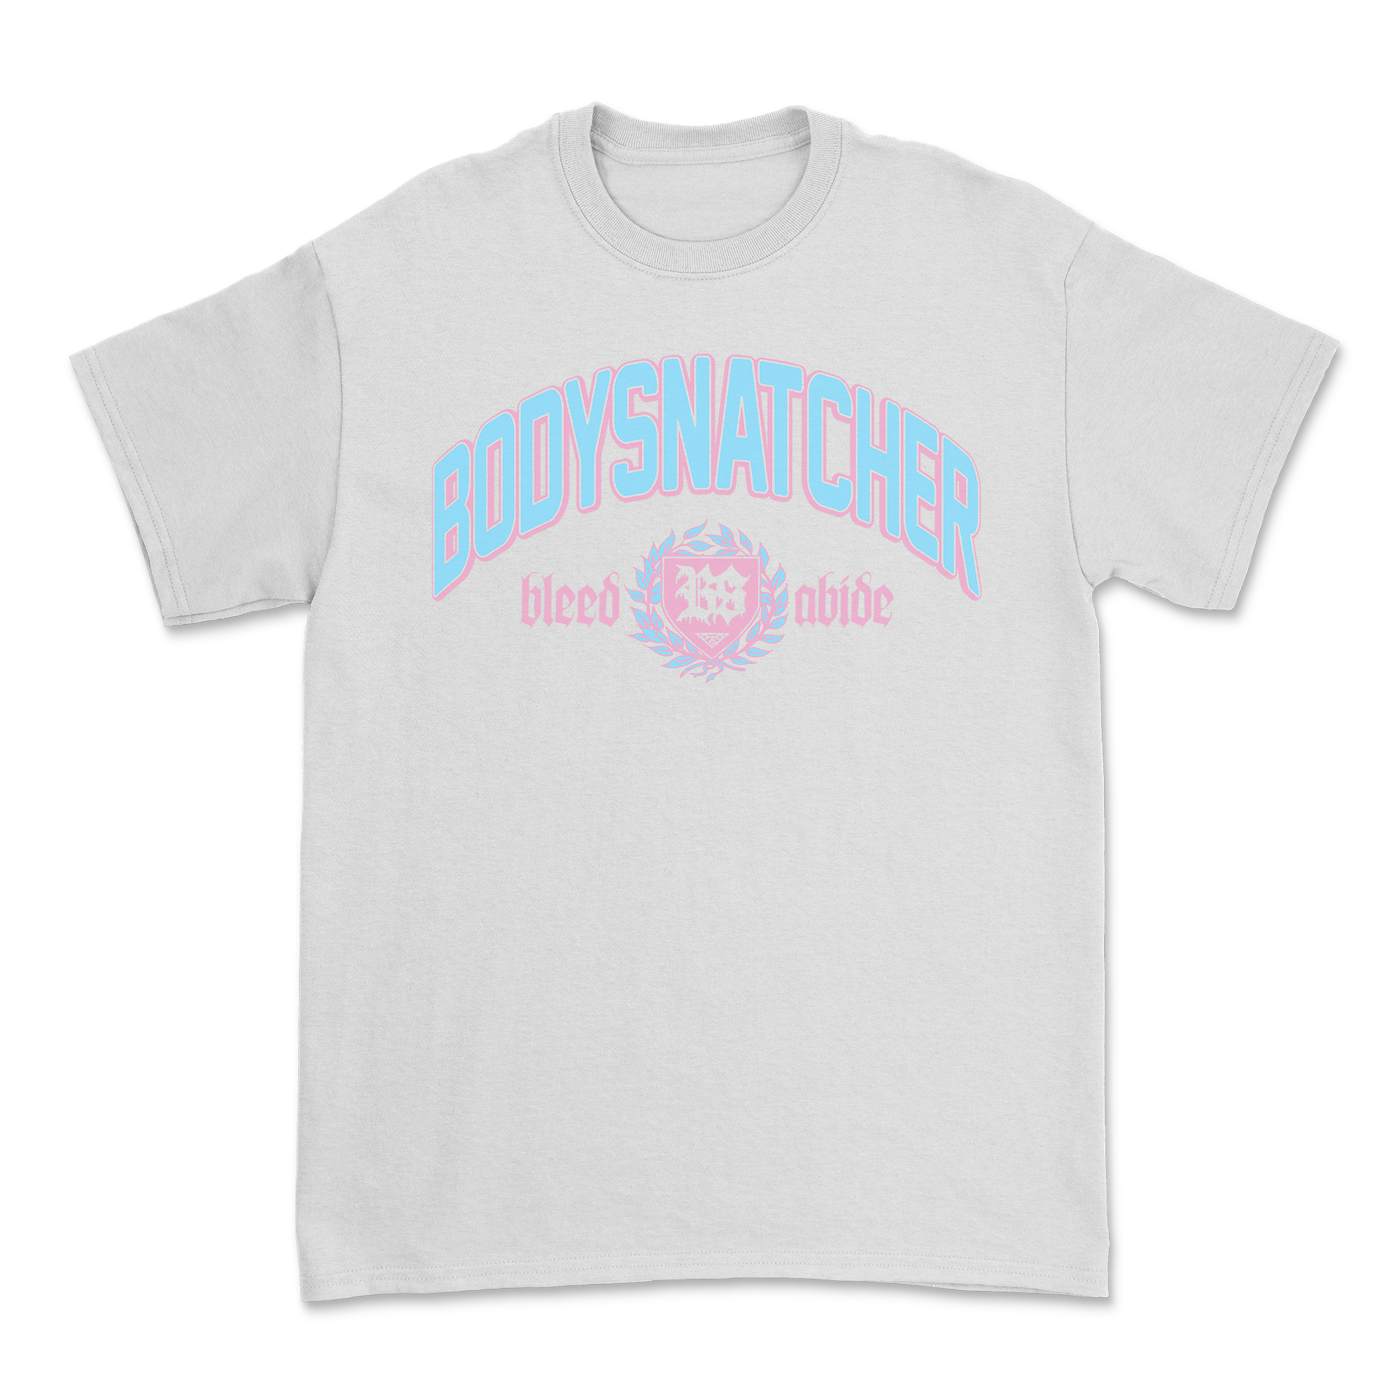 Bodysnatcher Collegiate T-Shirt (White)